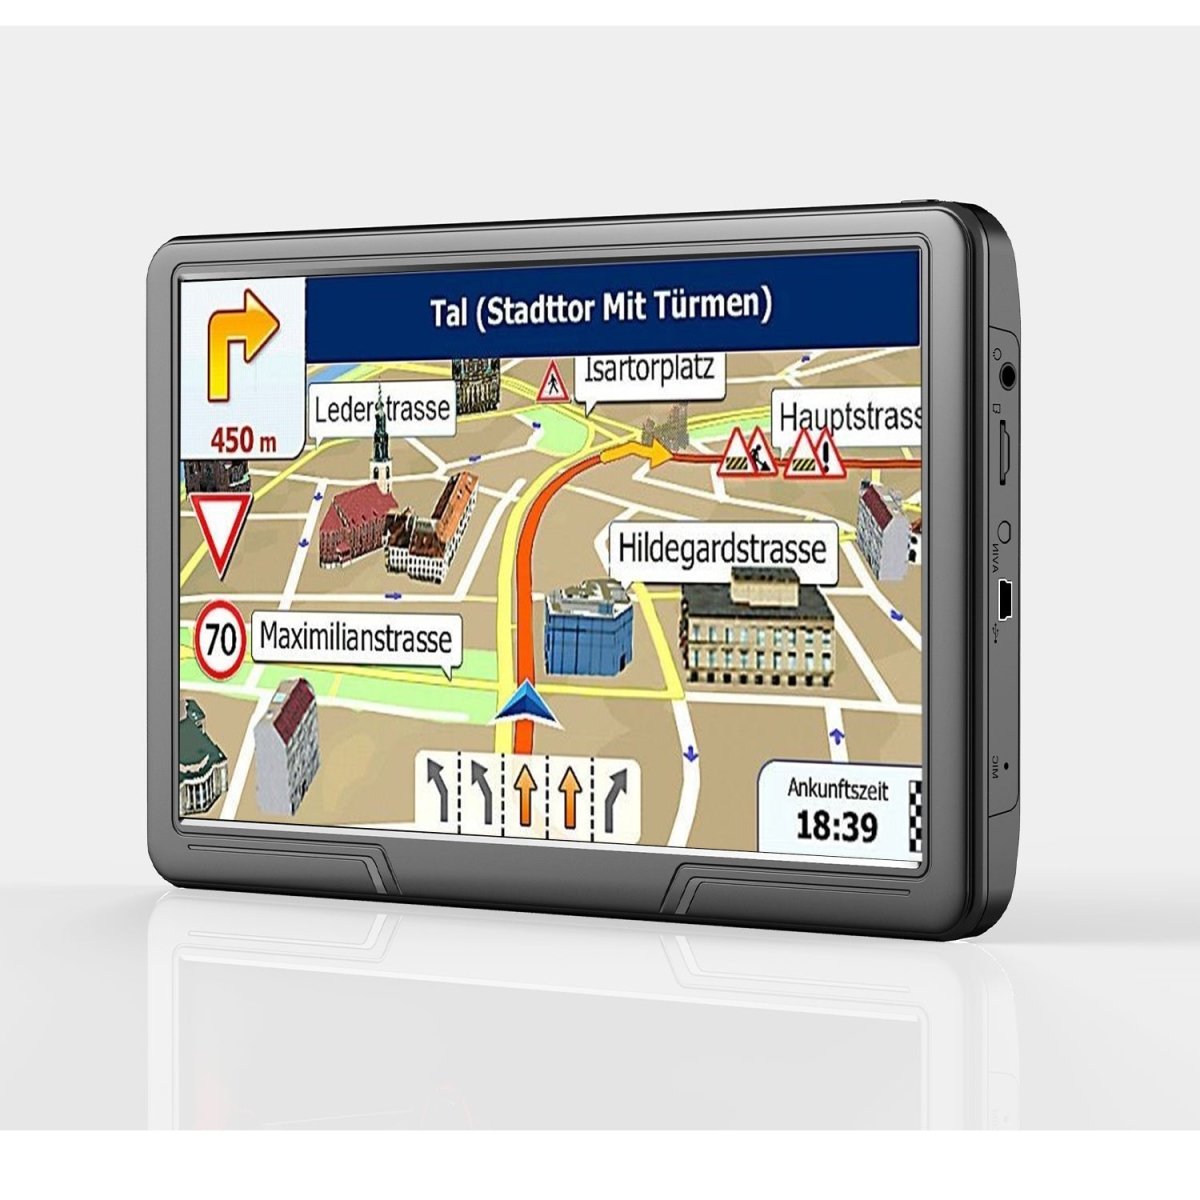 Elebest City 90 Navigationssystem, 9 Zoll Display, LKW Navigation, Wohnmobil- und Wohnwagen Navi, Freisprechfunktion, Navi für Auto